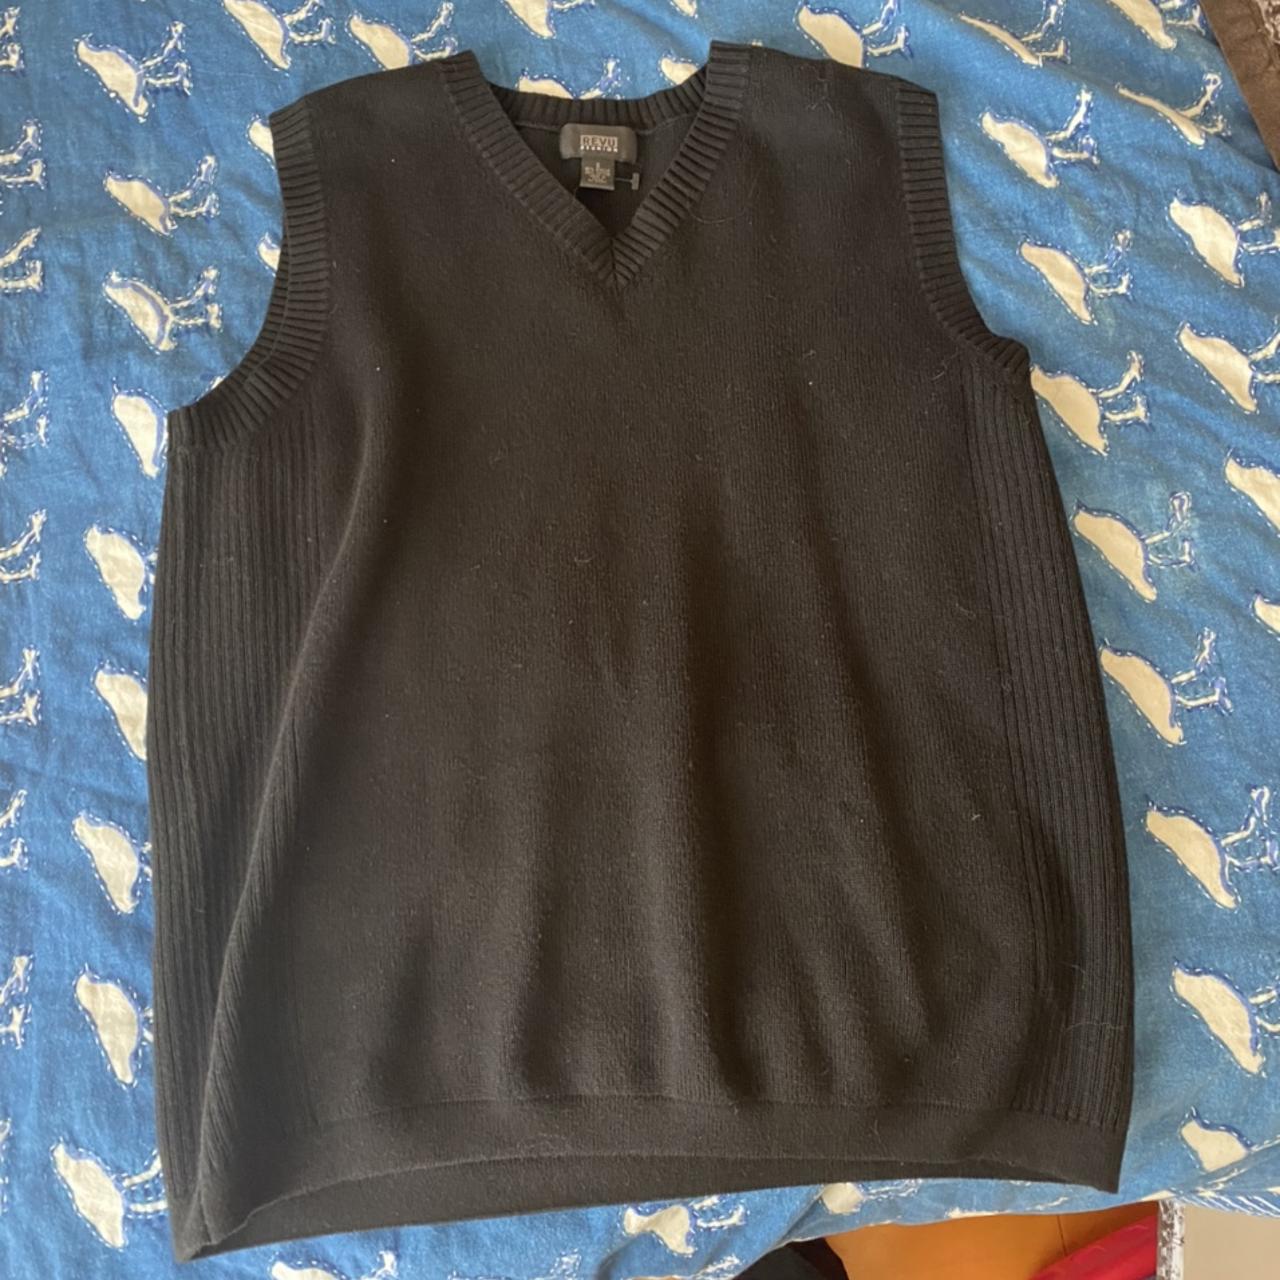 Black oversized grandpa vest size small - Depop